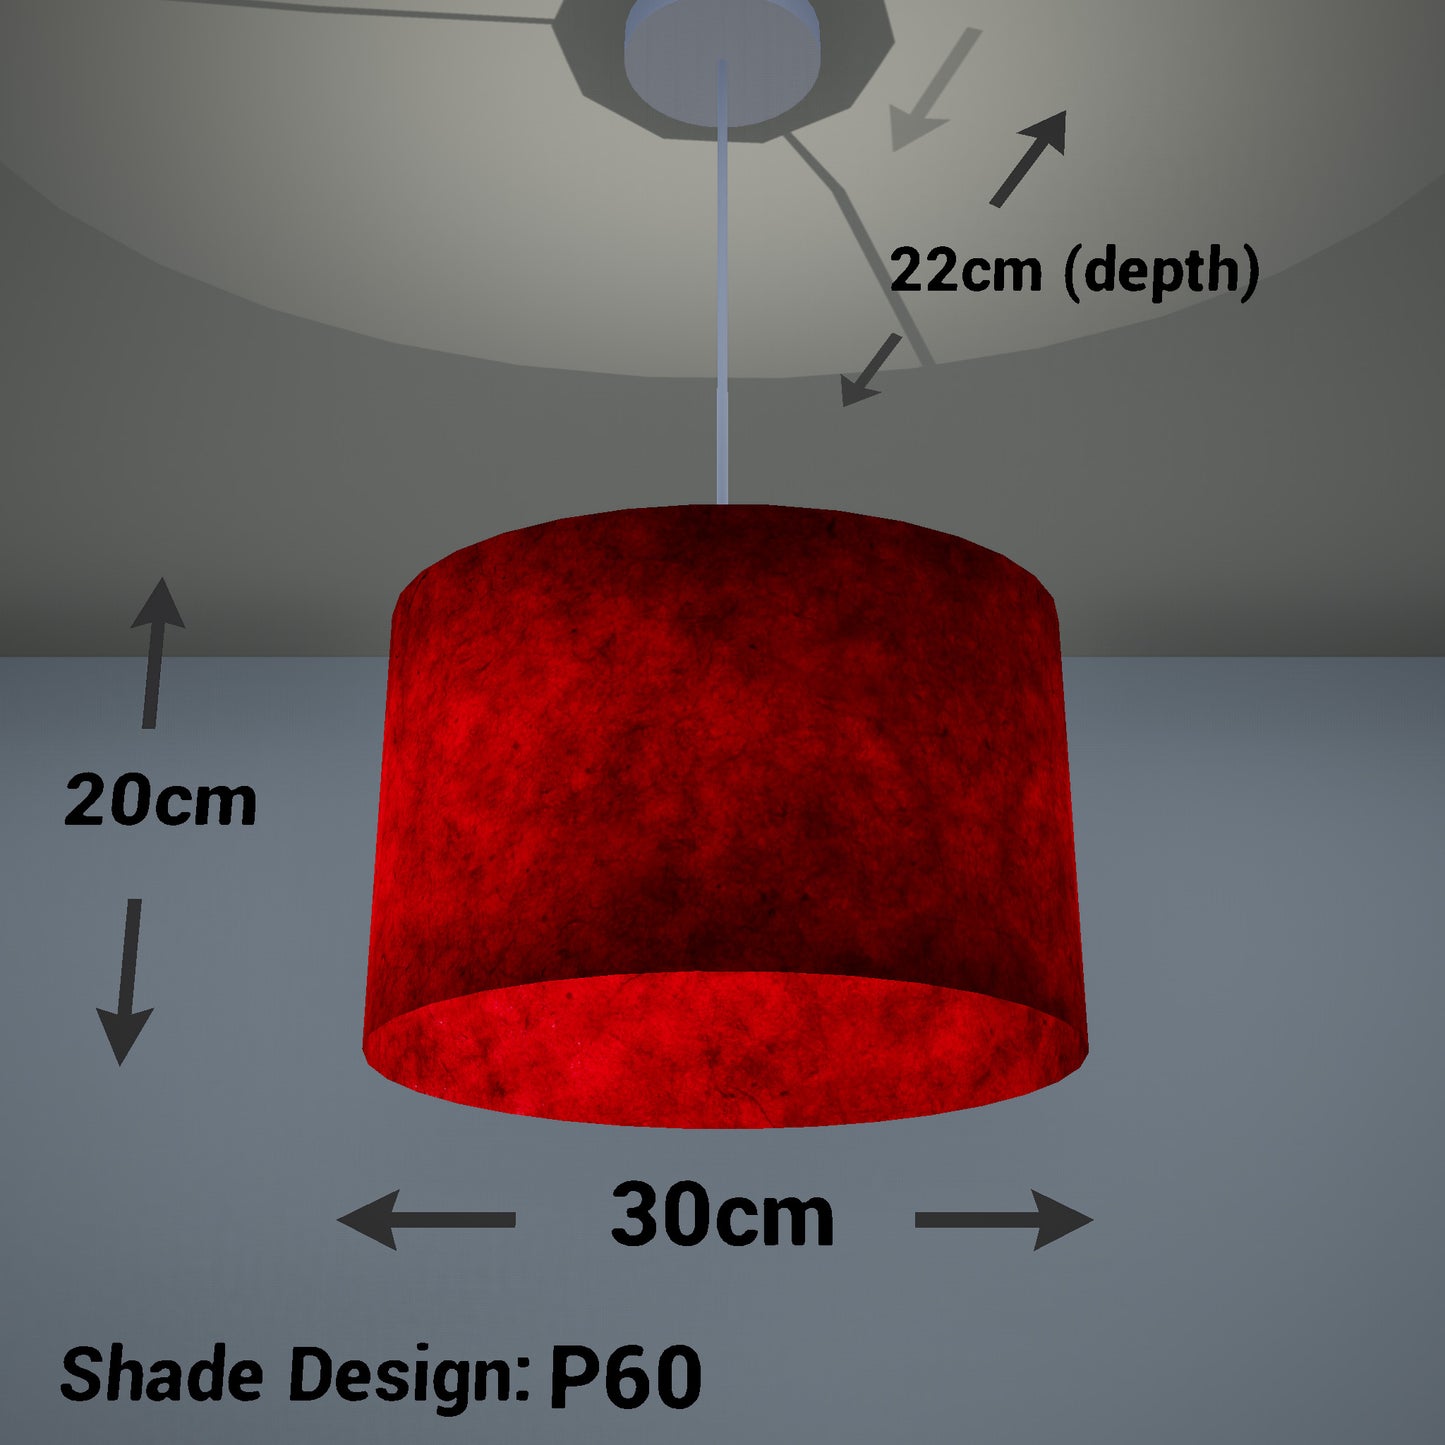 Oval Lamp Shade - P60 - Red Lokta, 30cm(w) x 20cm(h) x 22cm(d)